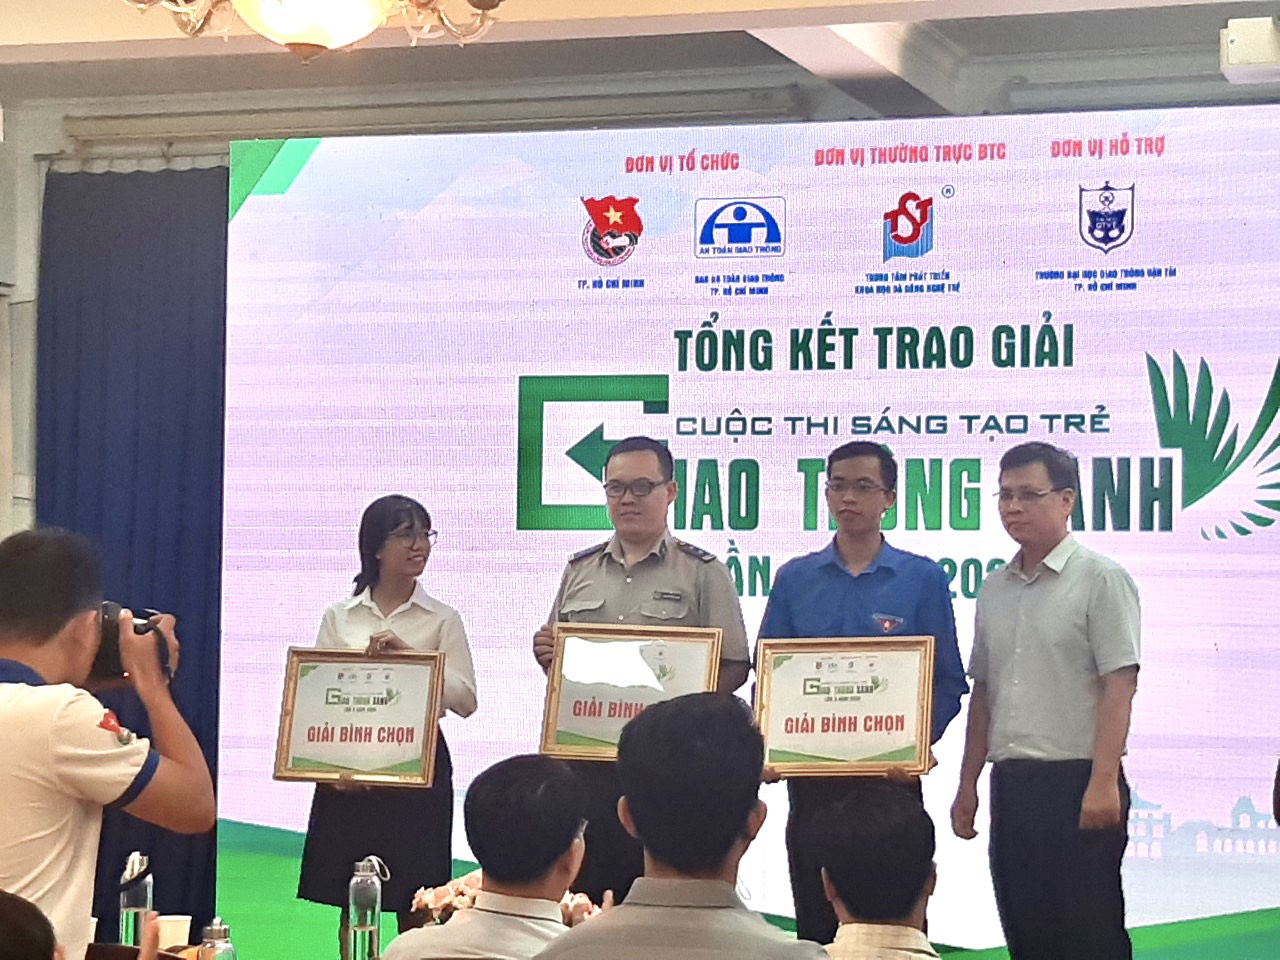 Đoàn viên Chi đoàn Chi cục THADS quận Bình Tân đạt giải khuyến khích cuộc thi sáng tạo trẻ “giao thông xanh” năm 2020